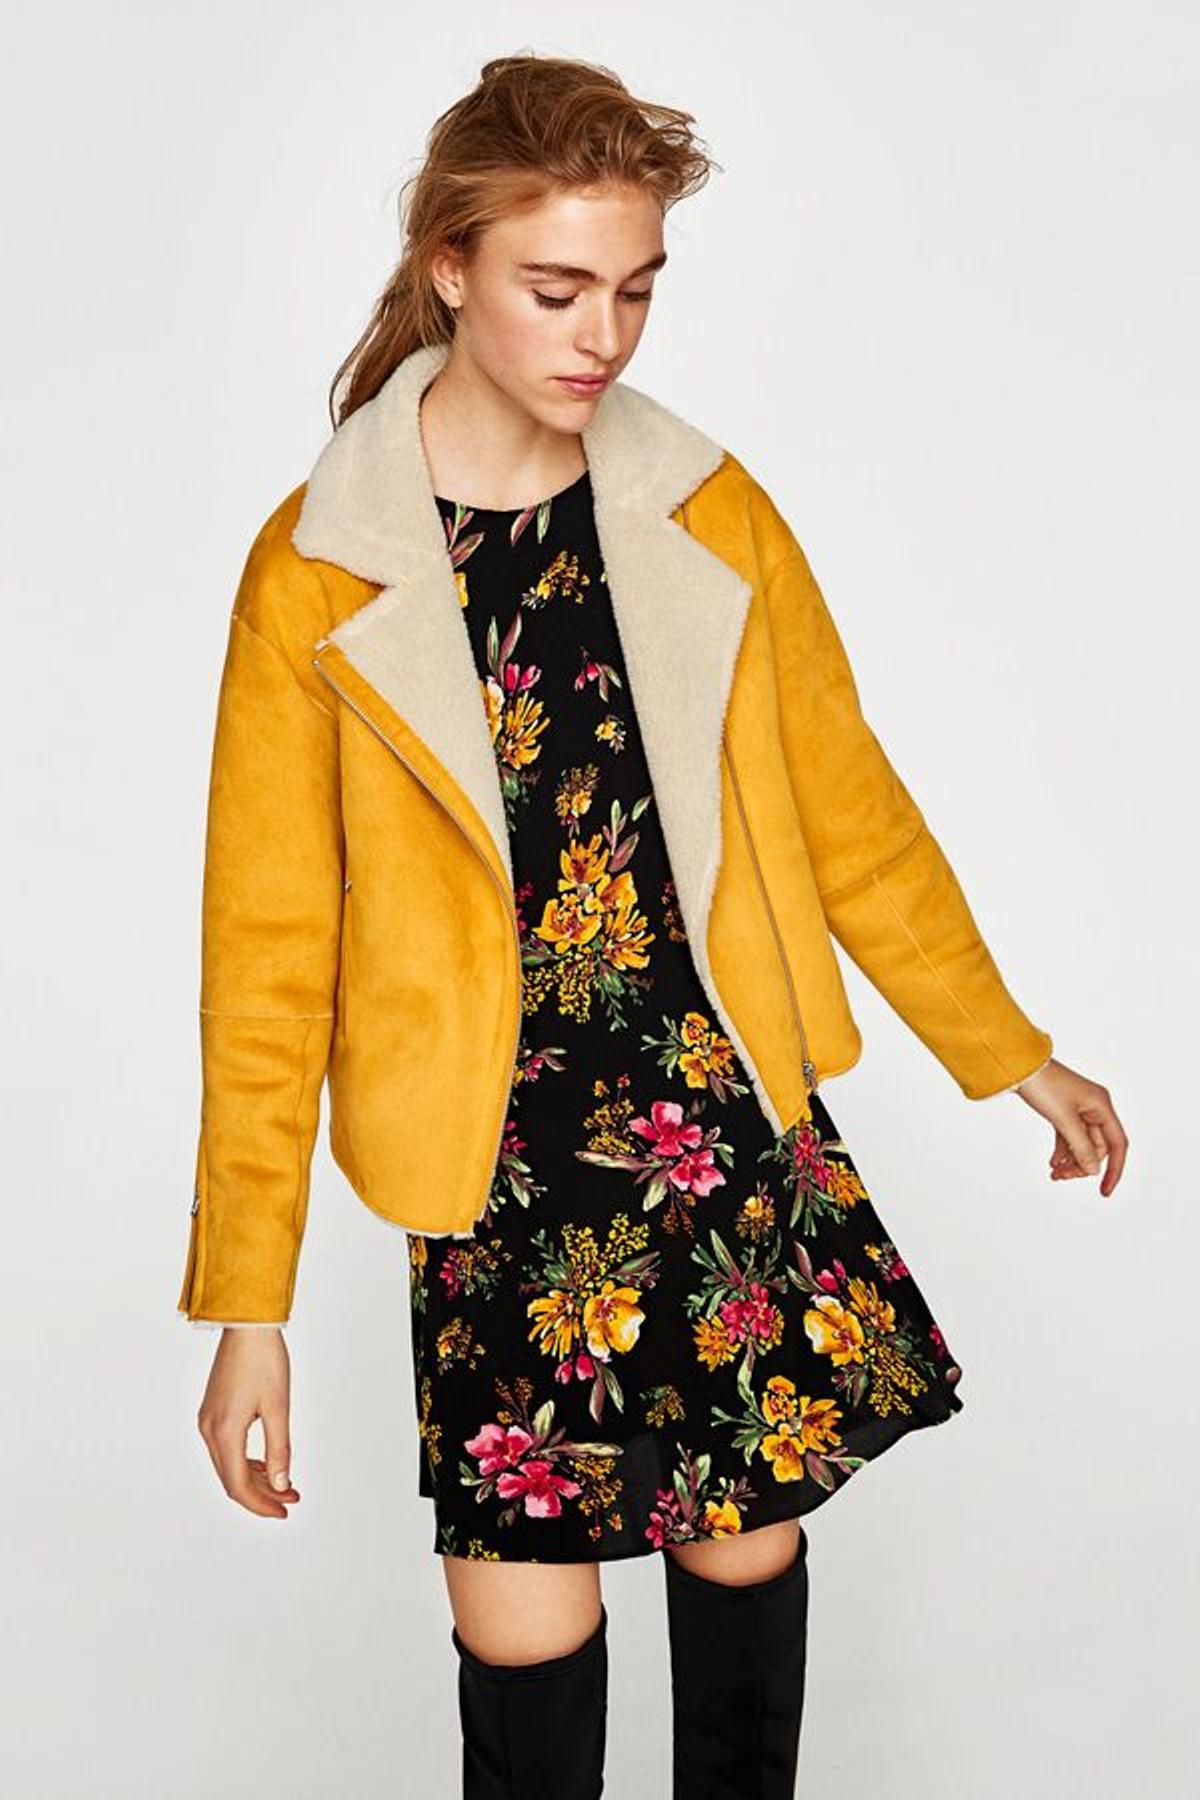 Rebajas en Zara: chaqueta de ante amarilla